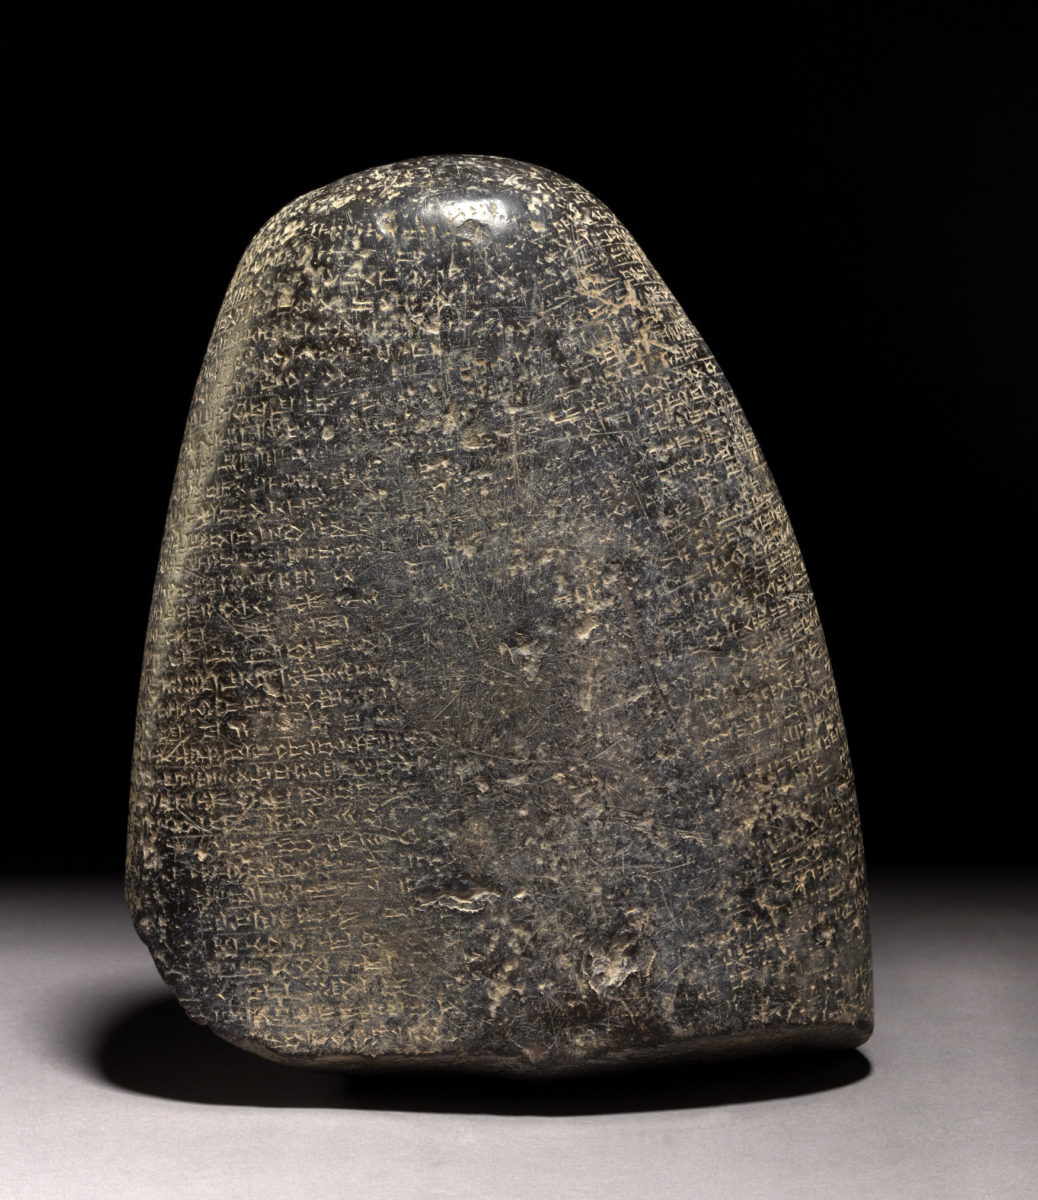 Η βαβυλωνιακή στήλη που το Λονδίνο επέστρεψε στο Ιράκ. Περ. 1126-1103 π.Χ., Ιράκ. Φωτ.: © The Trustees of the British Museum.